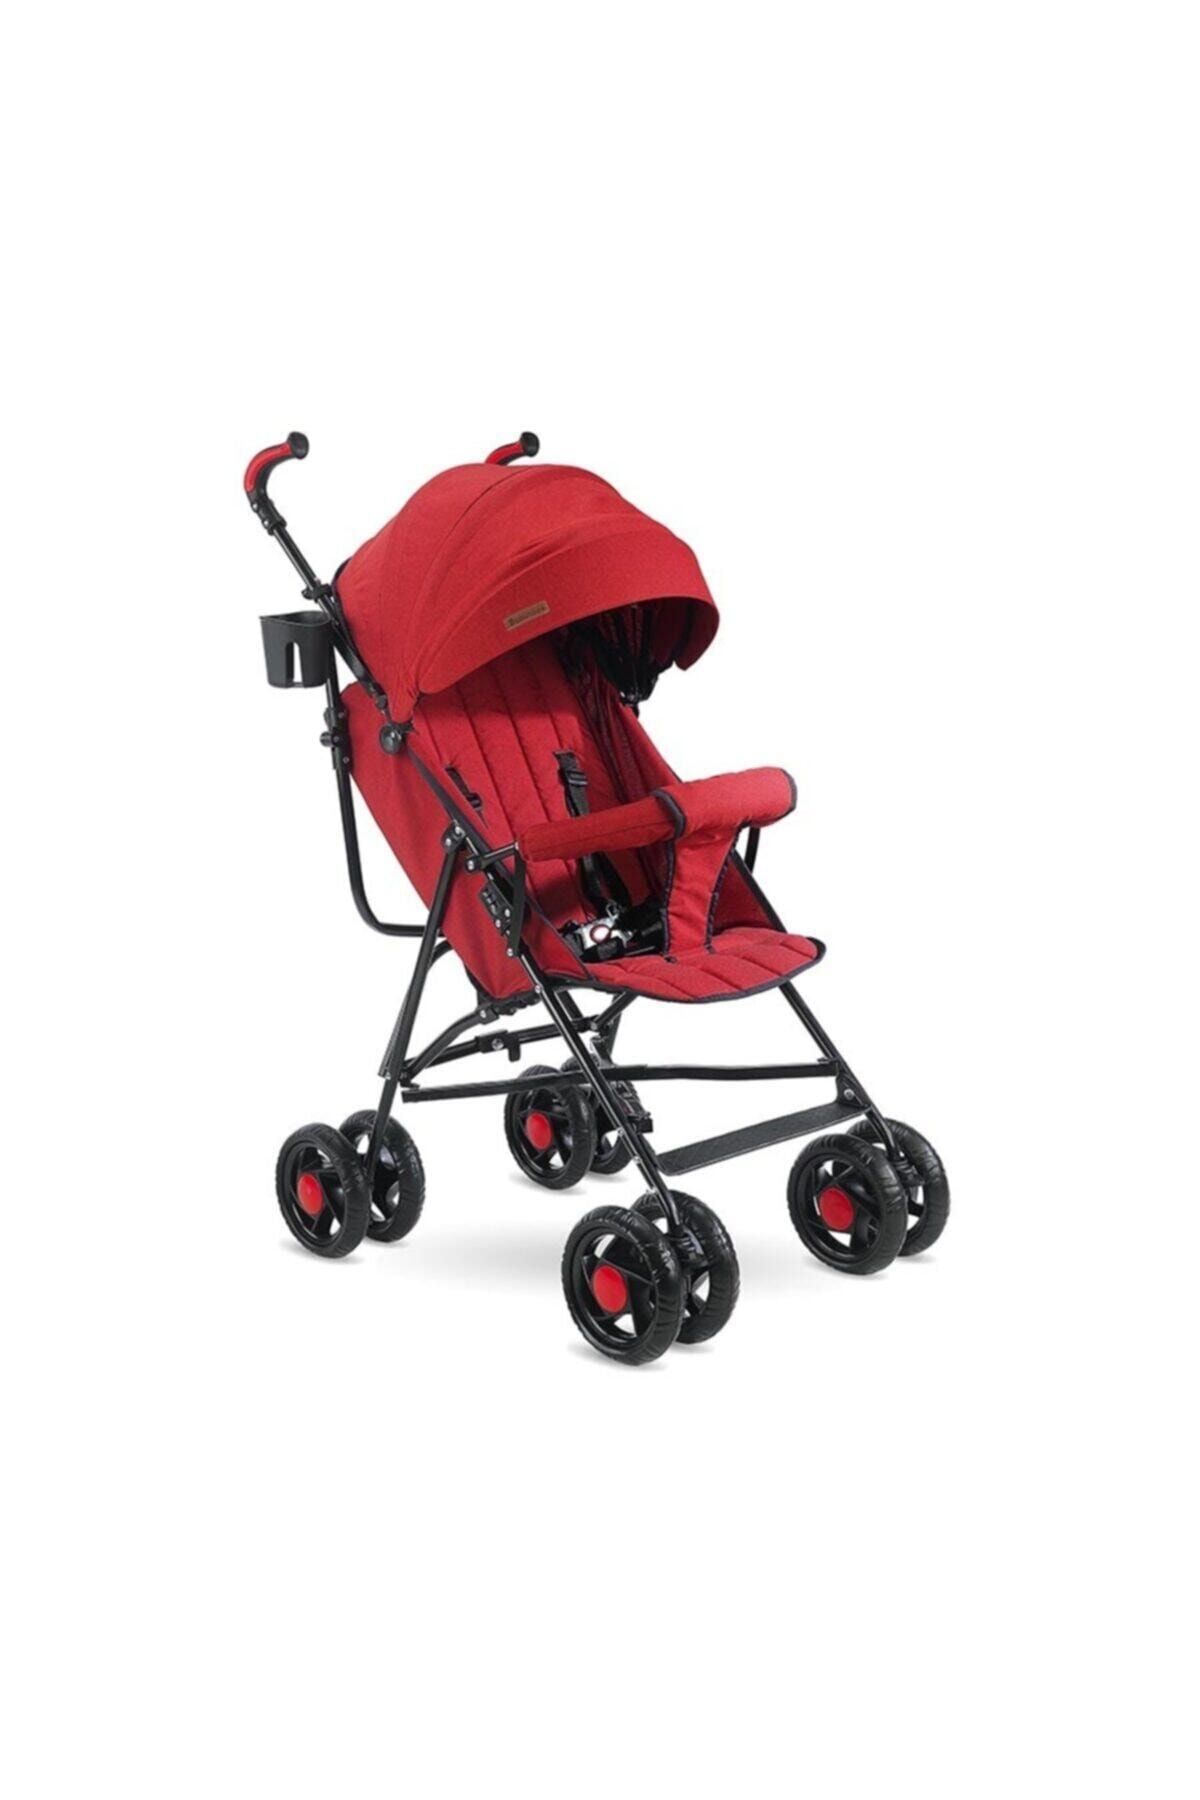 Babyhope Sc-100 Baston Bebek Arabası Kırmızı /